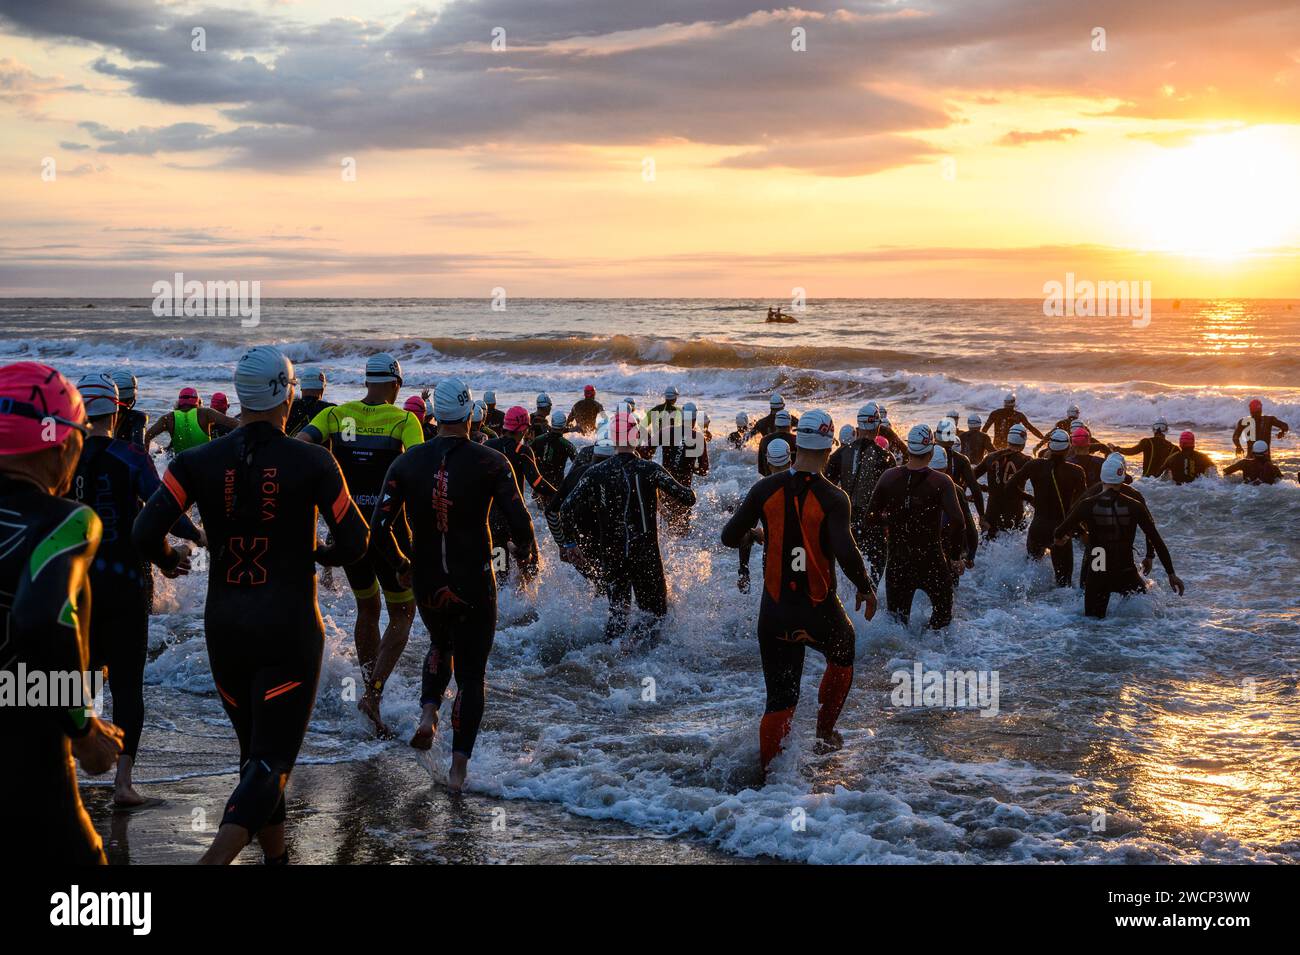 Triatleti in muta che corrono in mare durante una bella alba per iniziare la competizione a Burriana, Castellon, Spagna Foto Stock